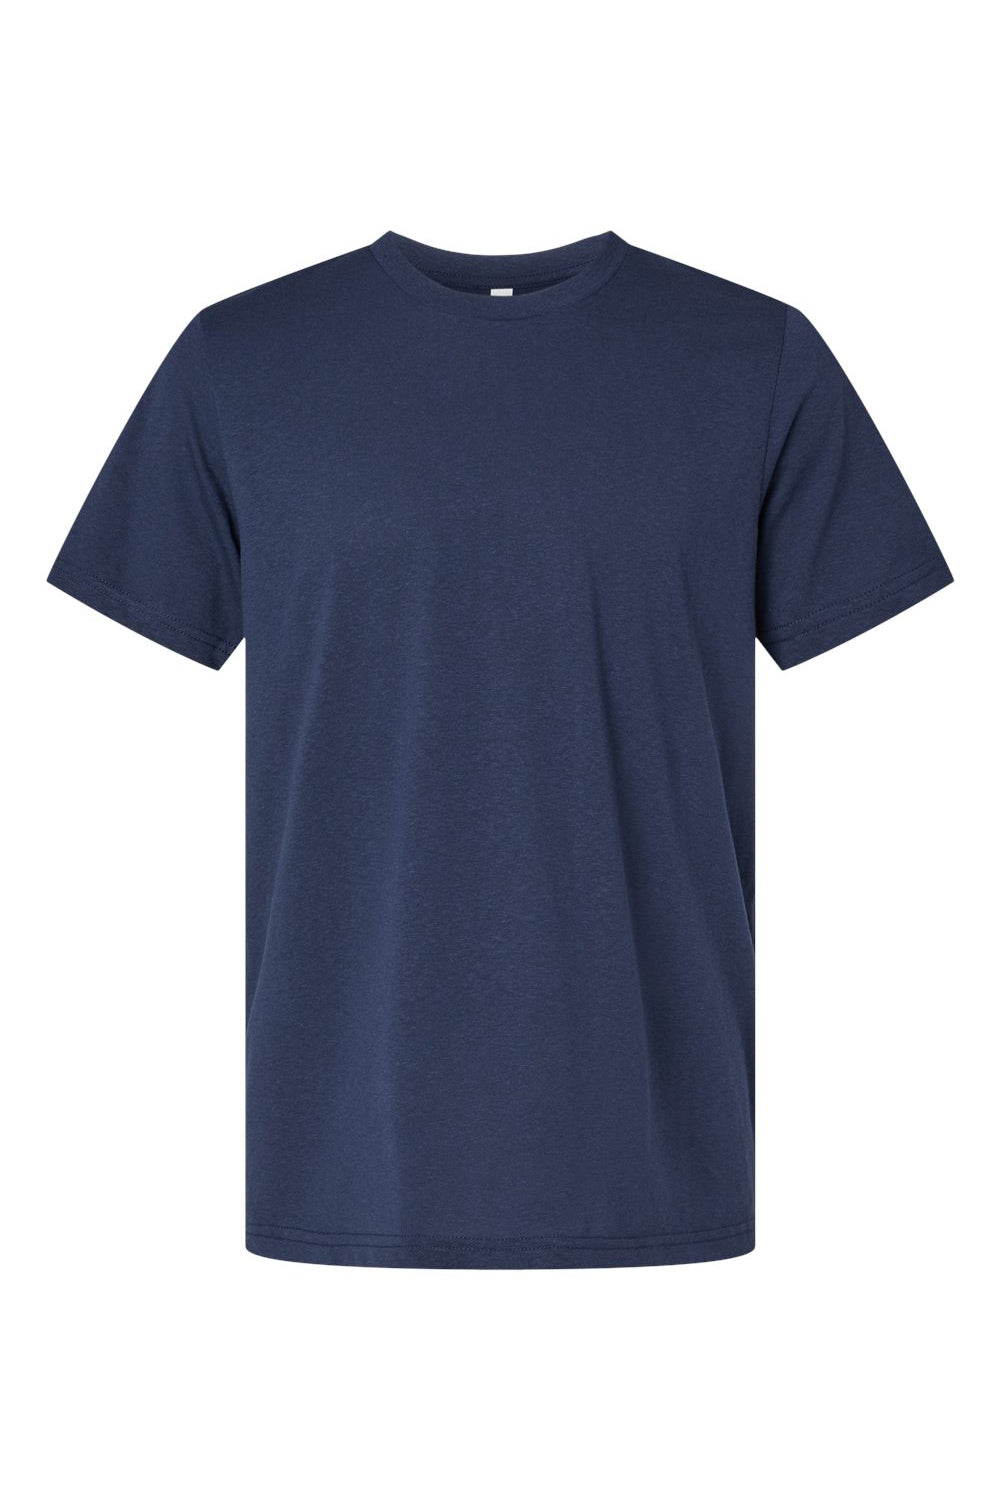 Bella + Canvas 3001ECO Mens EcoMax Short Sleeve Crewneck T-Shirt Navy Blue Flat Front